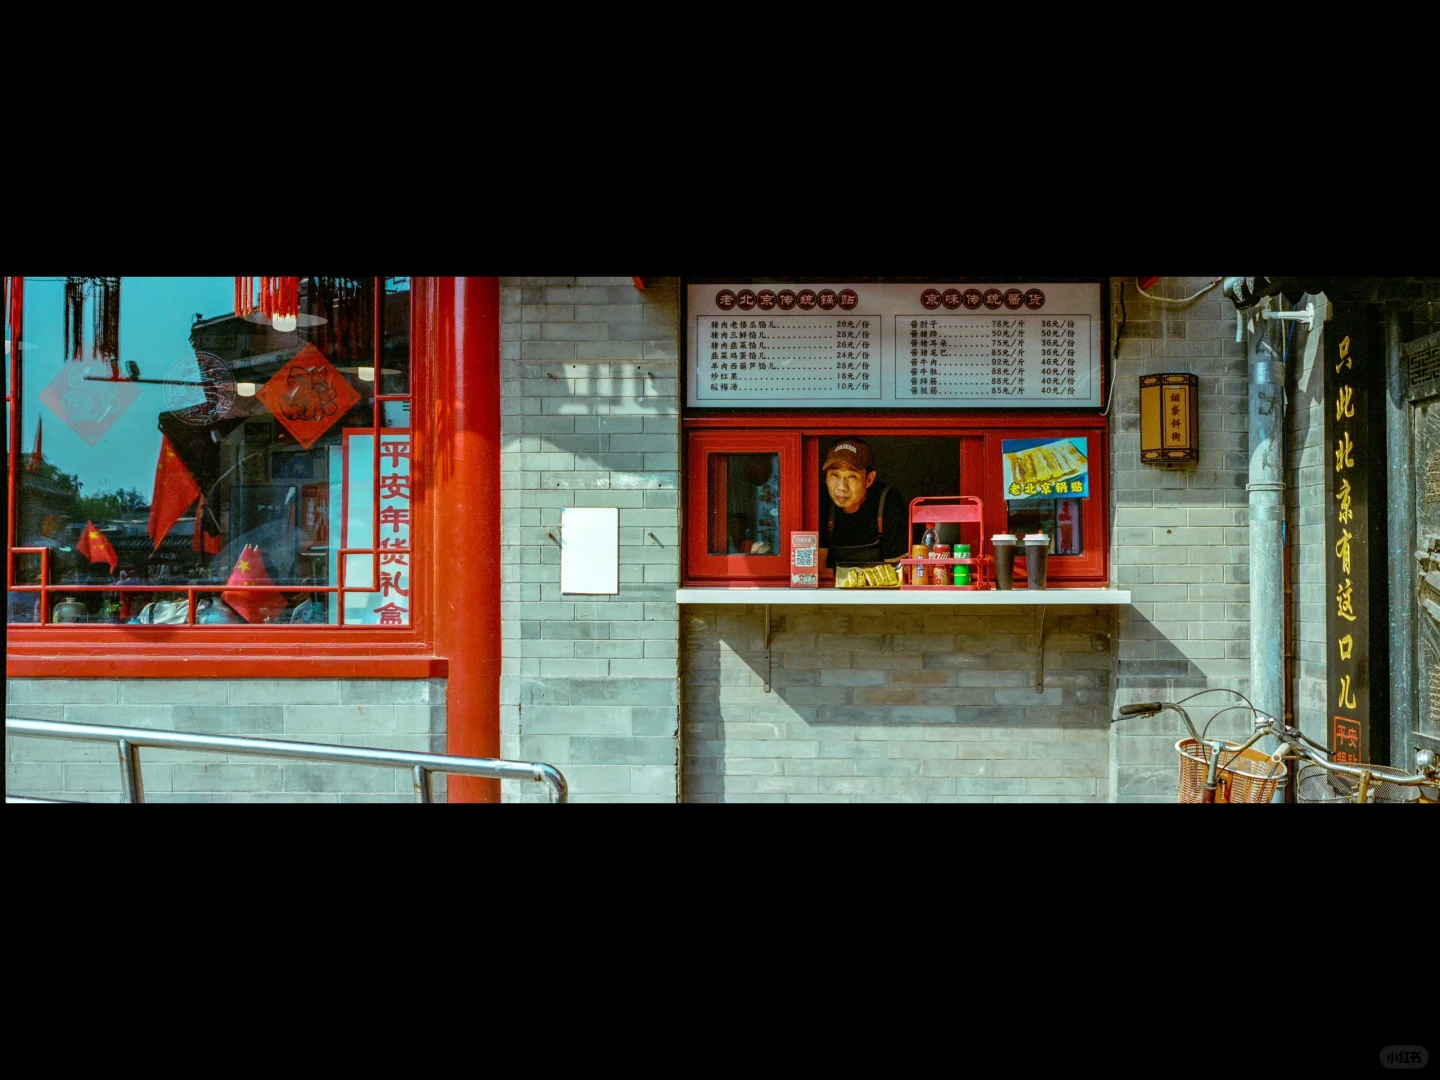 北京艺术漫游 | 路边电影放映社 | U.672